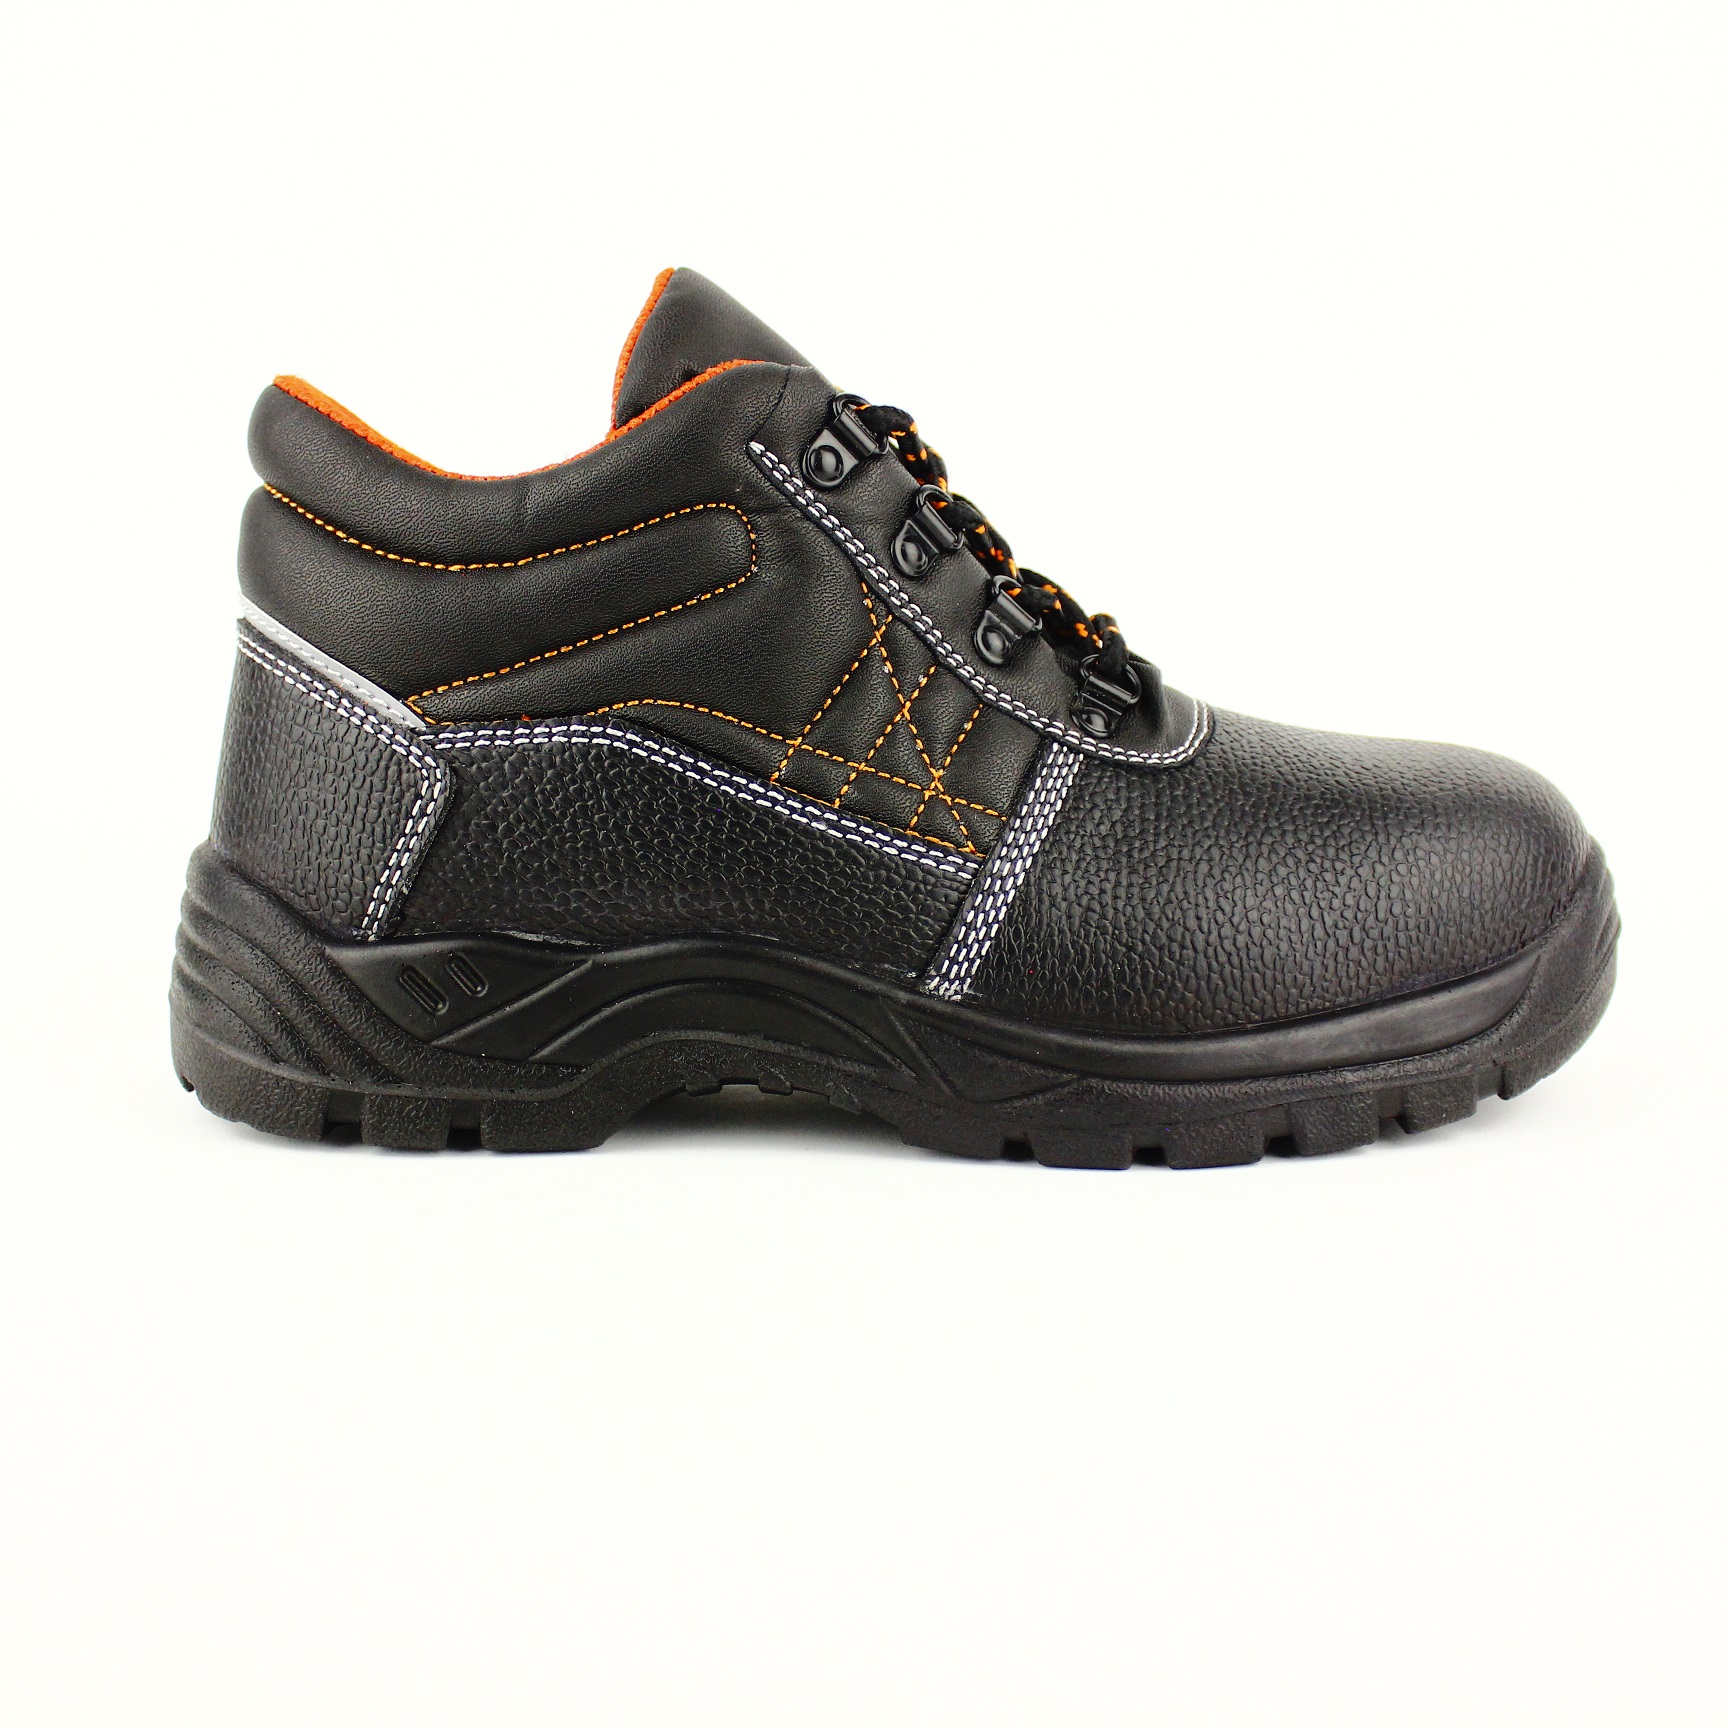 Zaštitne cipele duboke BRIONI S1P sa č.k. i tabanicom vel. 47 Lacuna